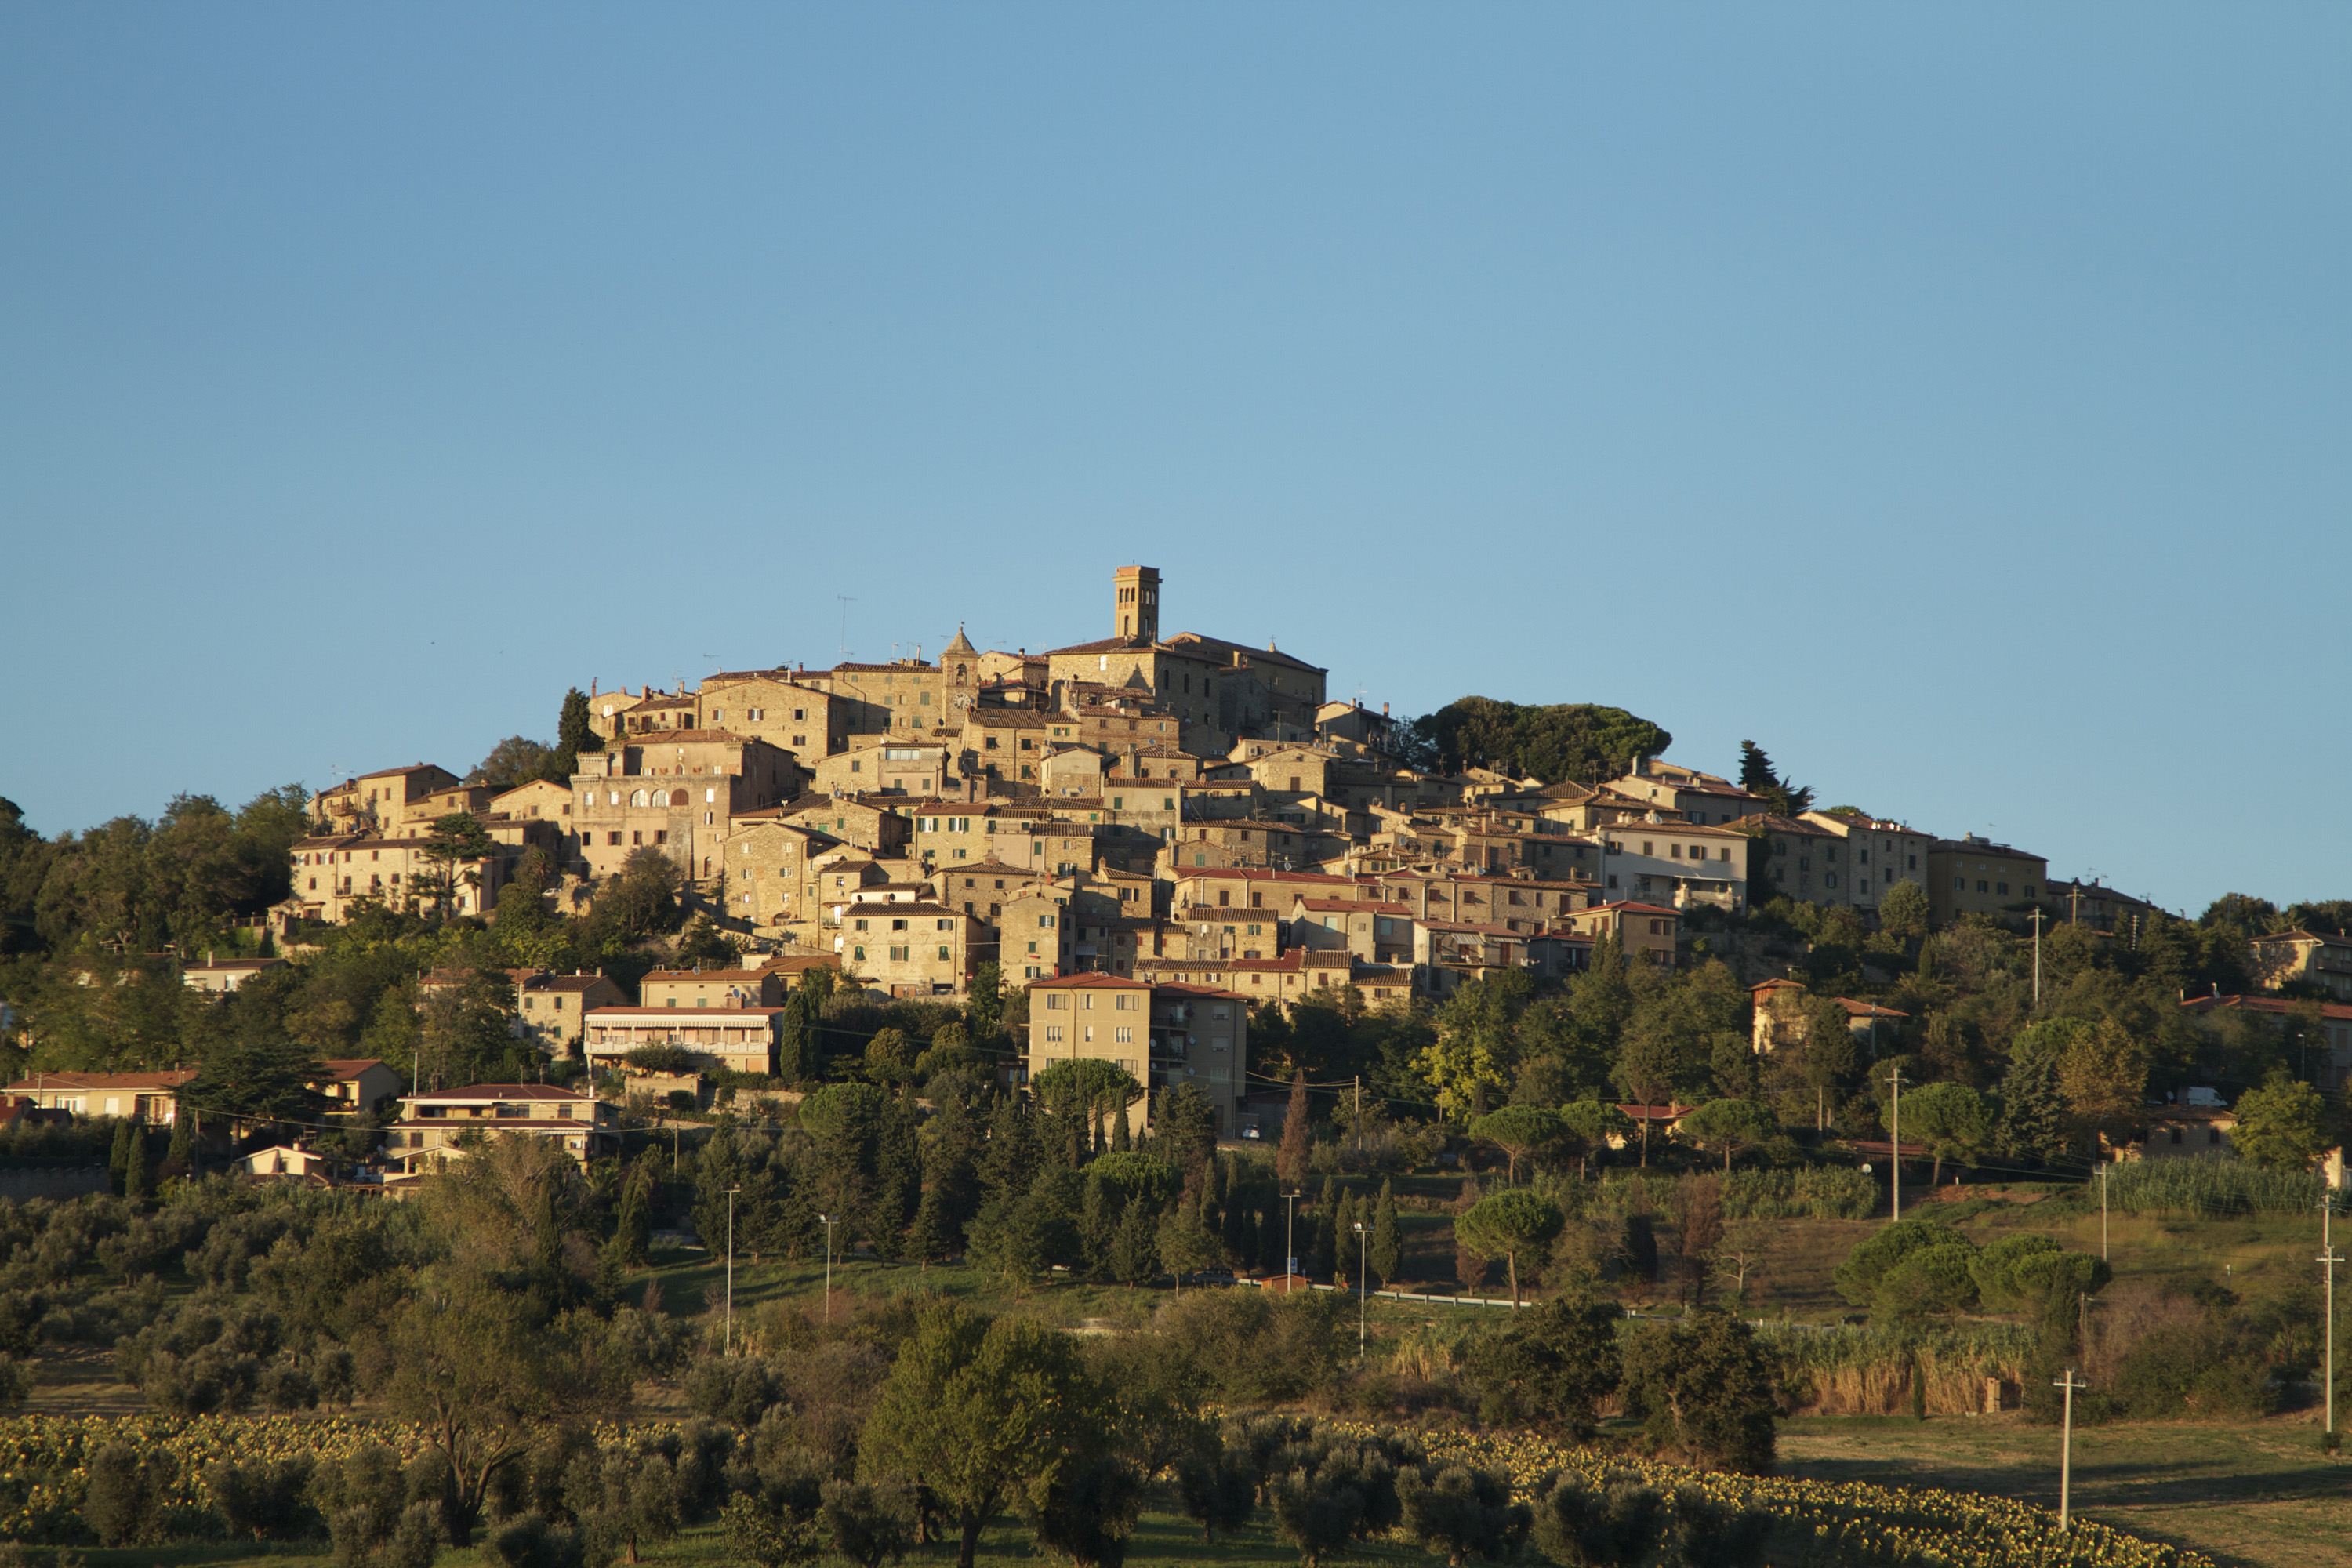 Το μικρότερο μεσαιωνικό χωριό της Μεσογείου -Ατμόσφαιρα παραμυθιού [εικόνες] - Εικόνα